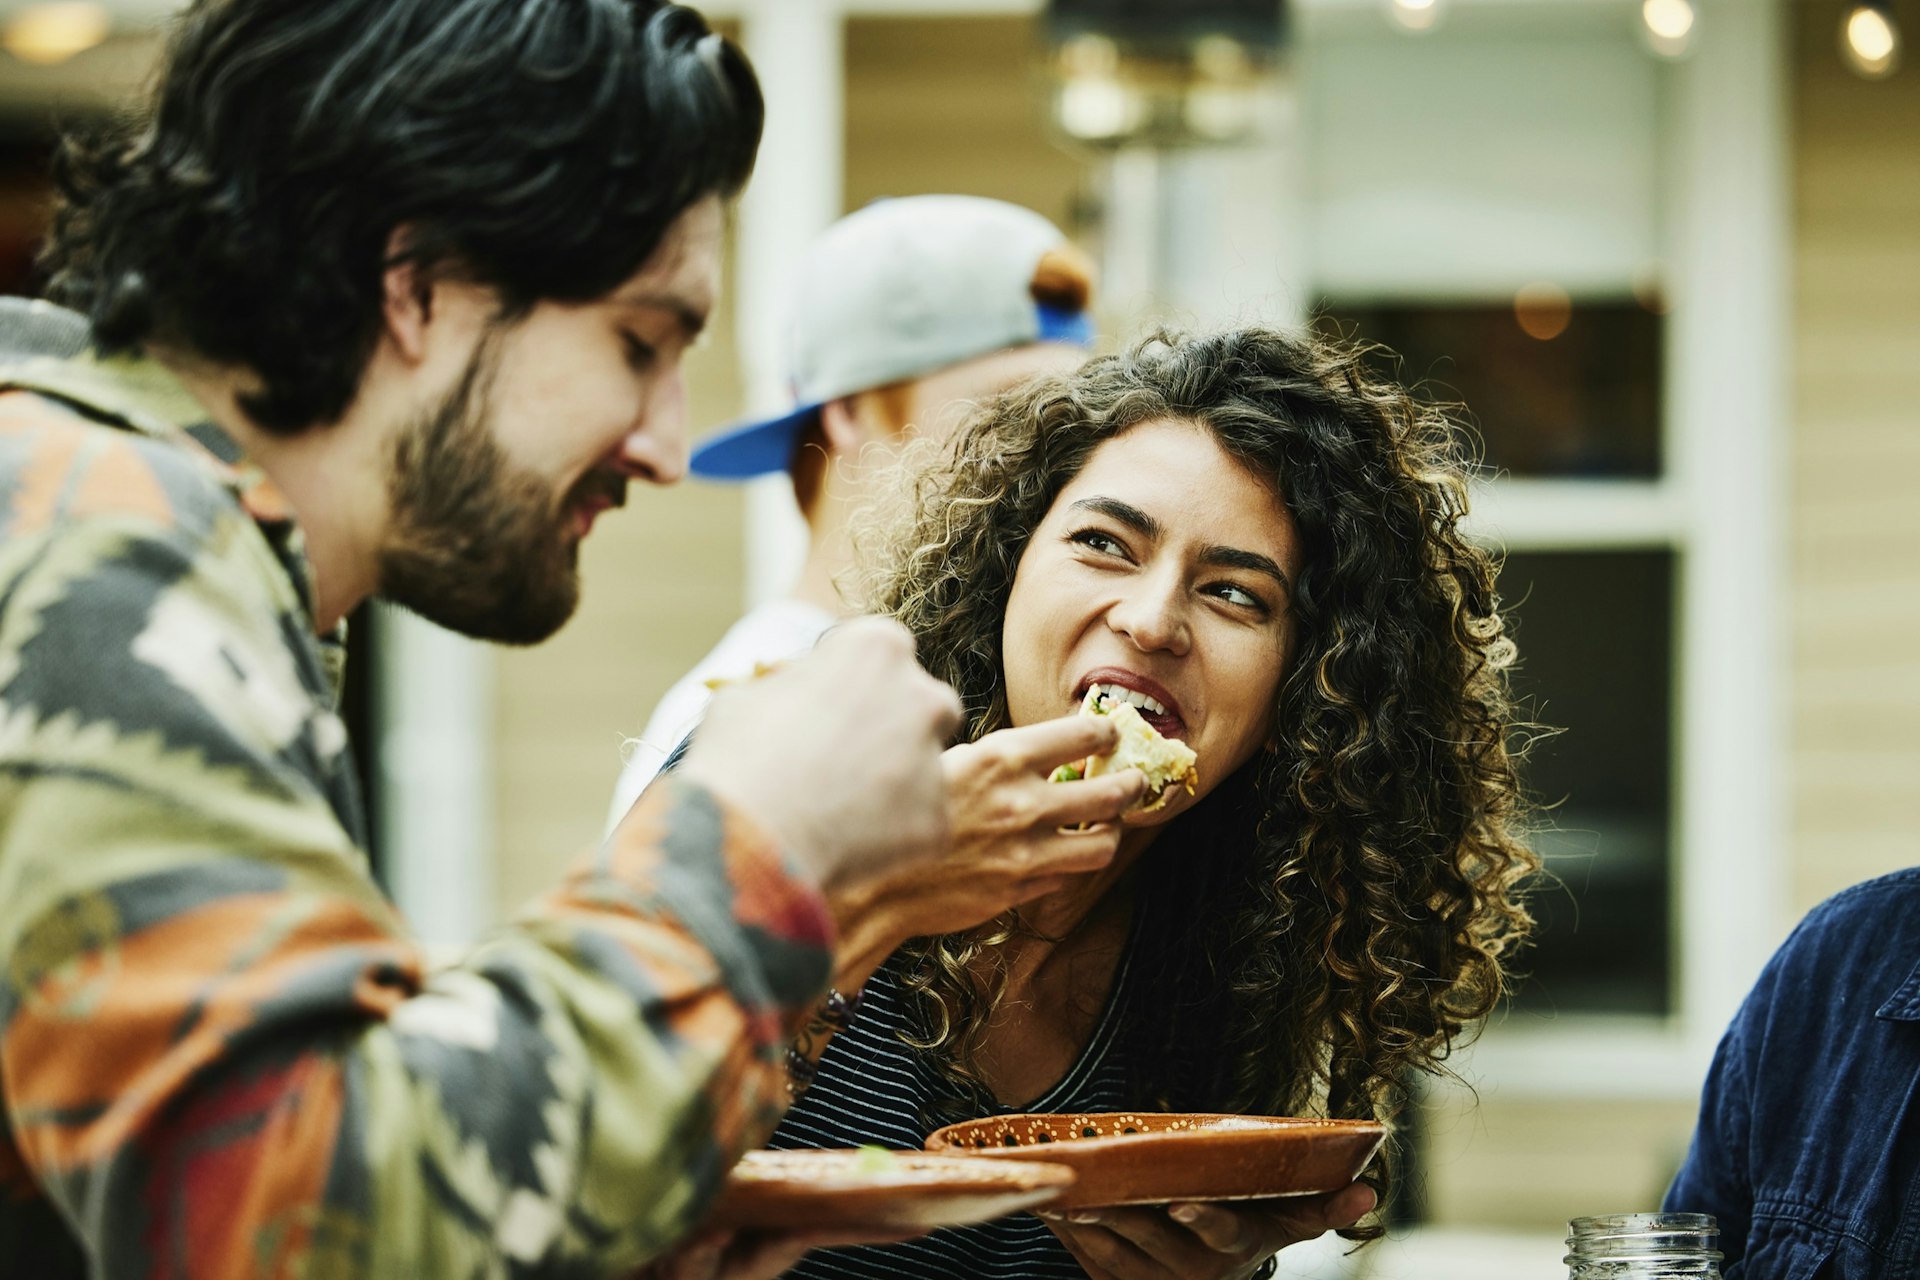 Medium close up shot of woman and man eating food